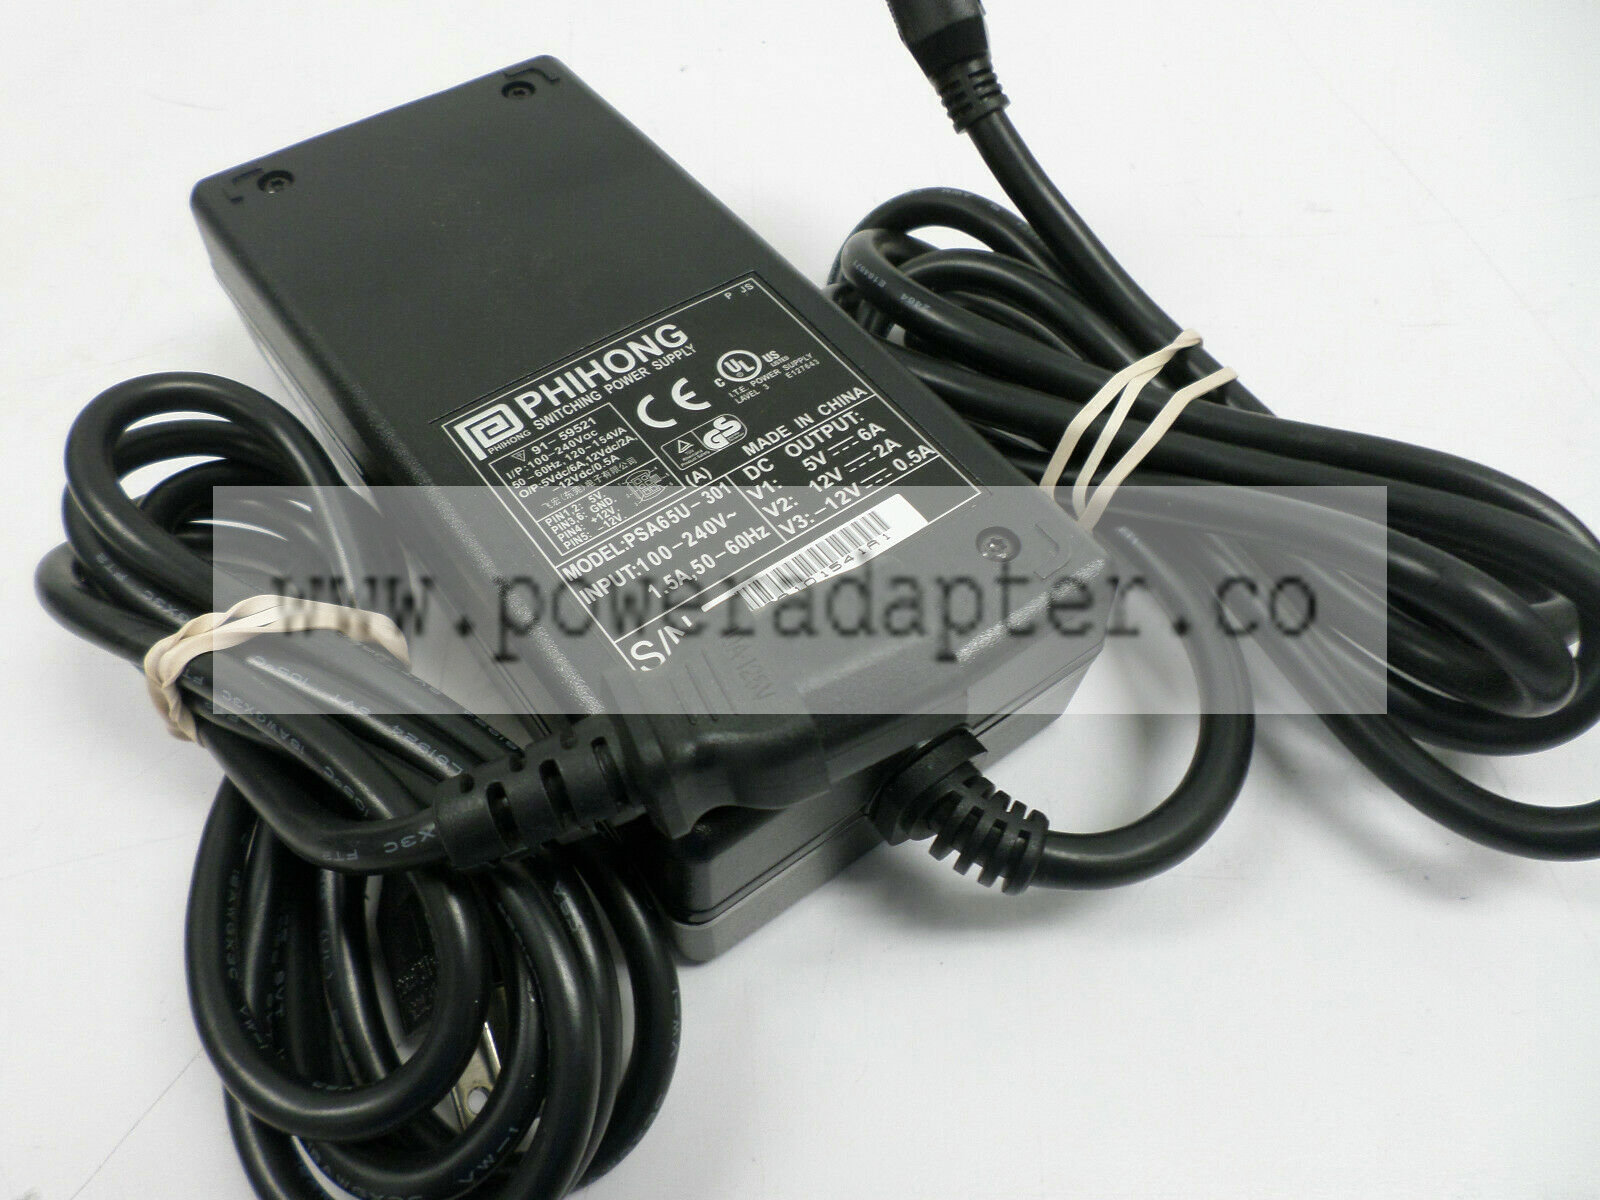 PhiHong AC/DC Power Supply Adapter 12V, 5V, 91-59521; PSA65U-301 Output Voltage(s): 12 V, 5V, -12V Brand: PhiHong Ty - Click Image to Close